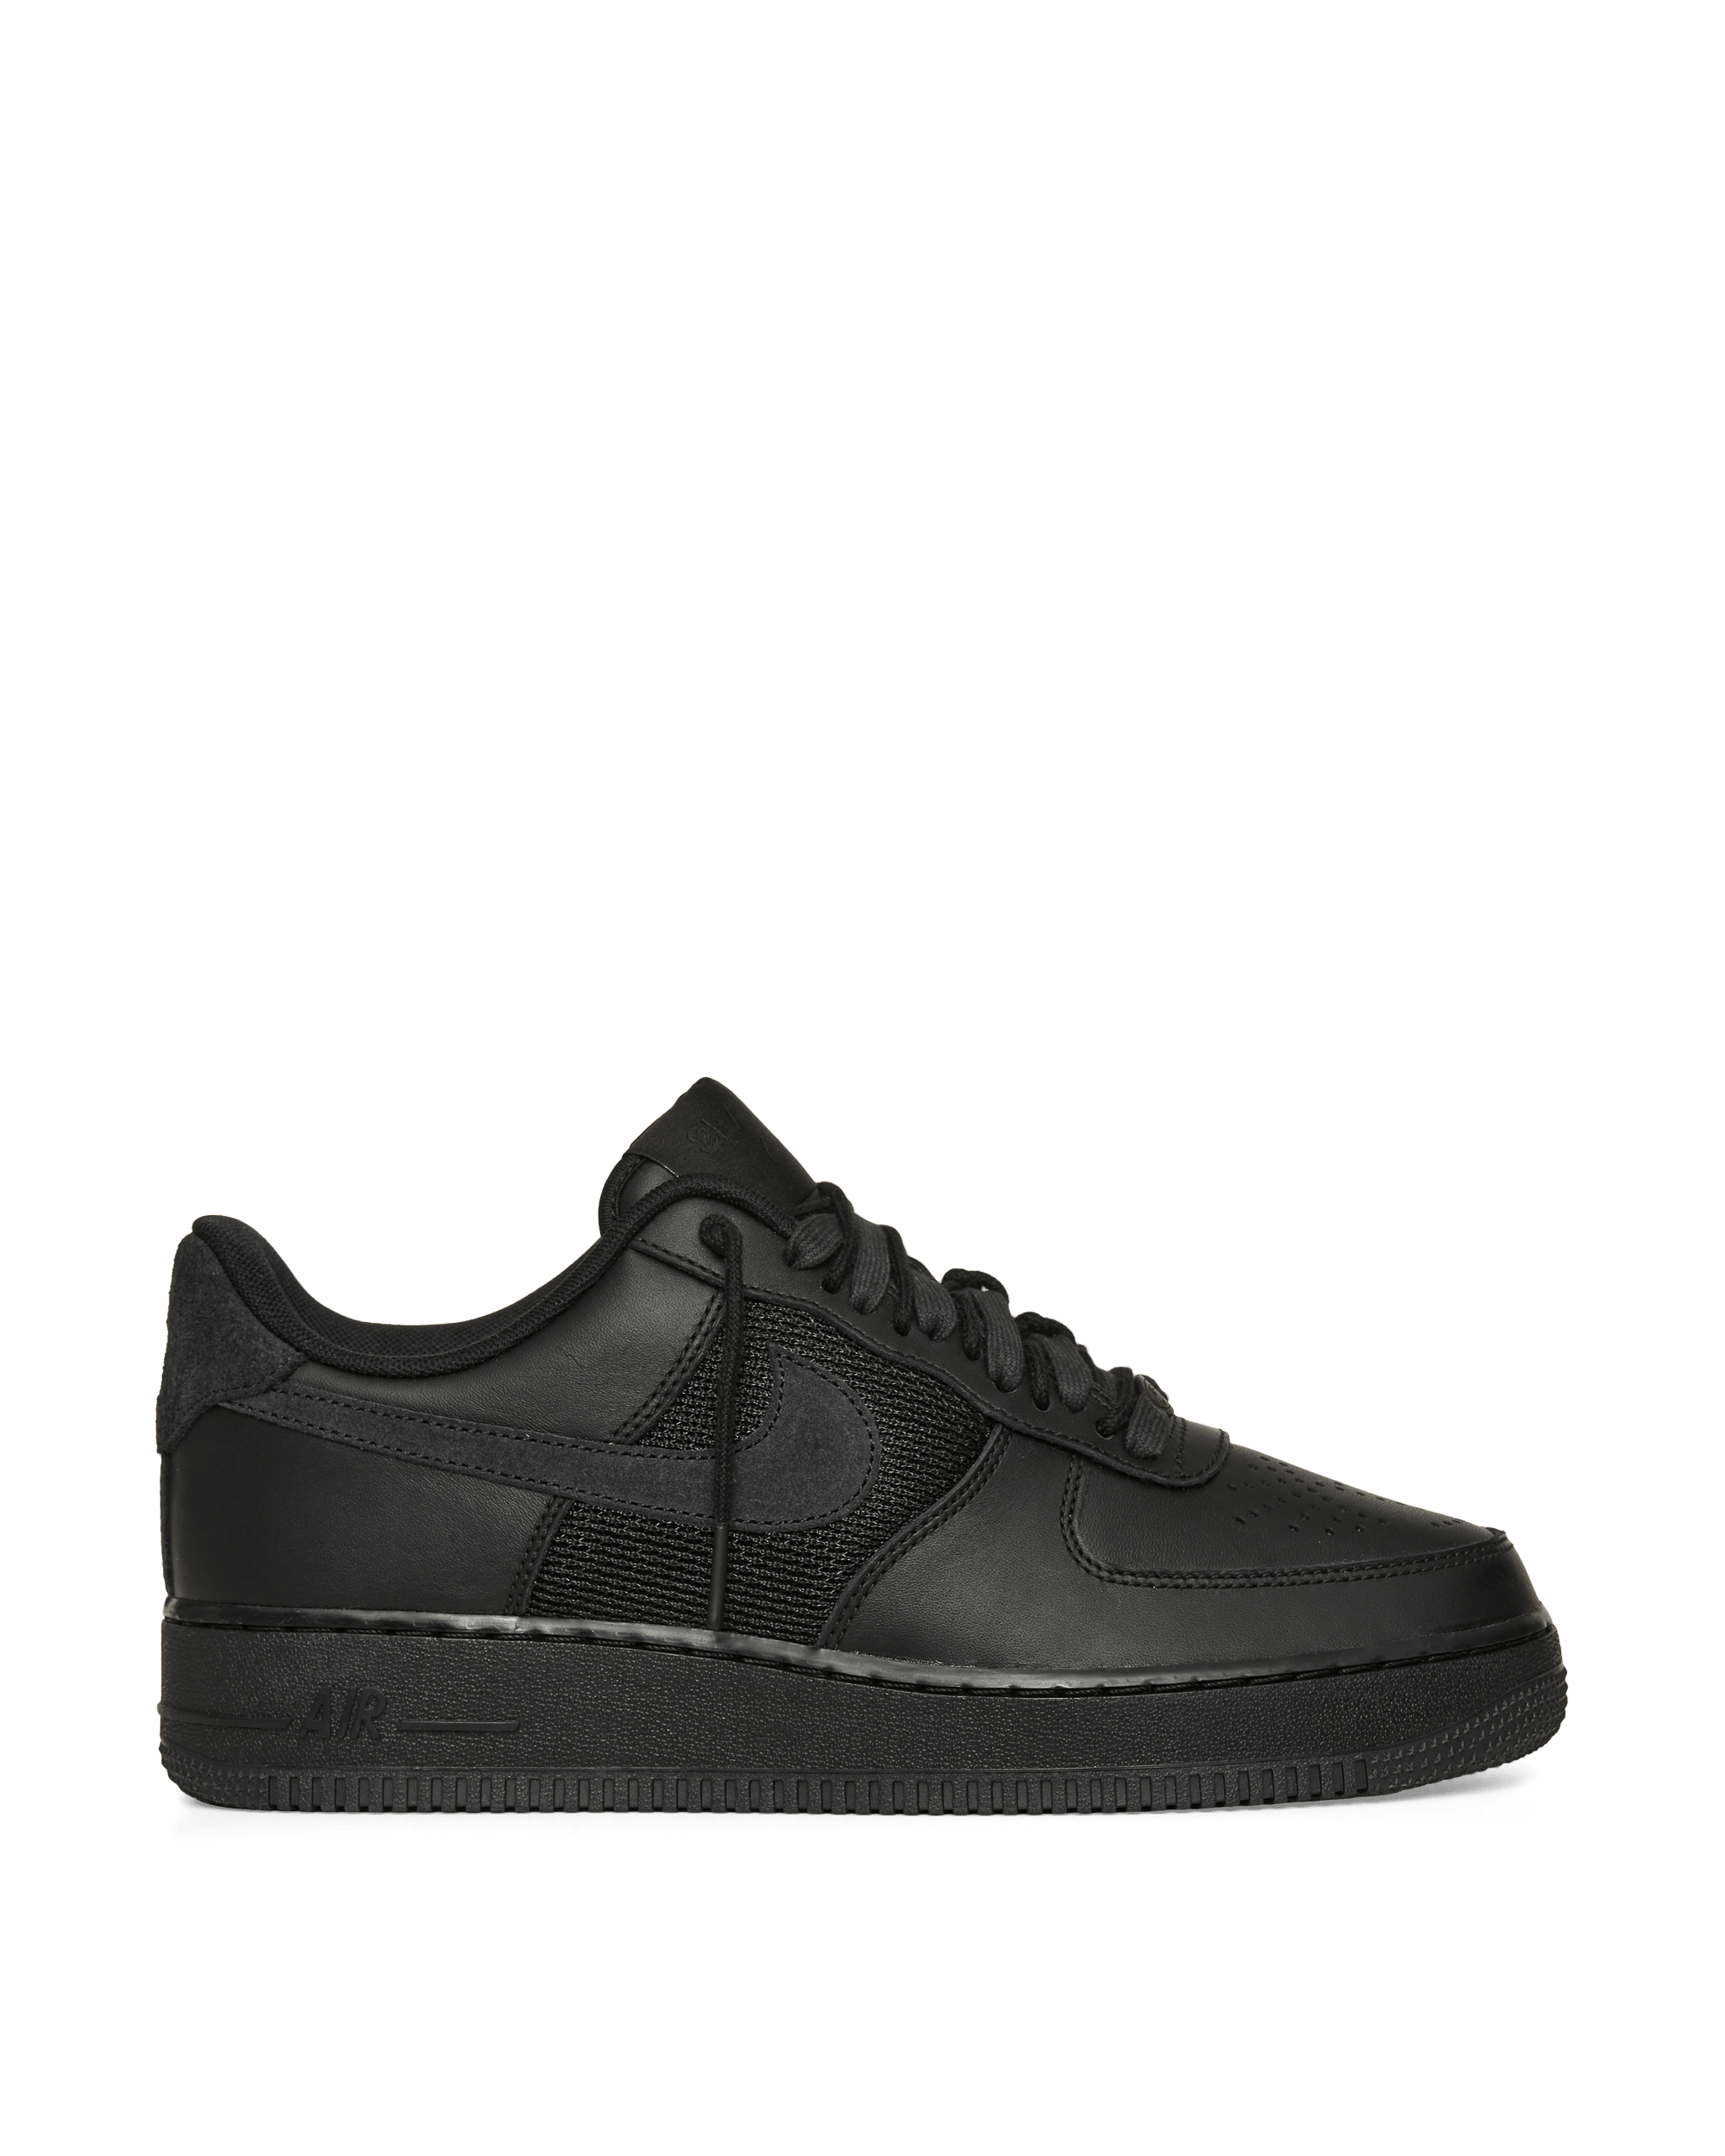 Slam Jam Air Force 1 Low SP Sneakers Black